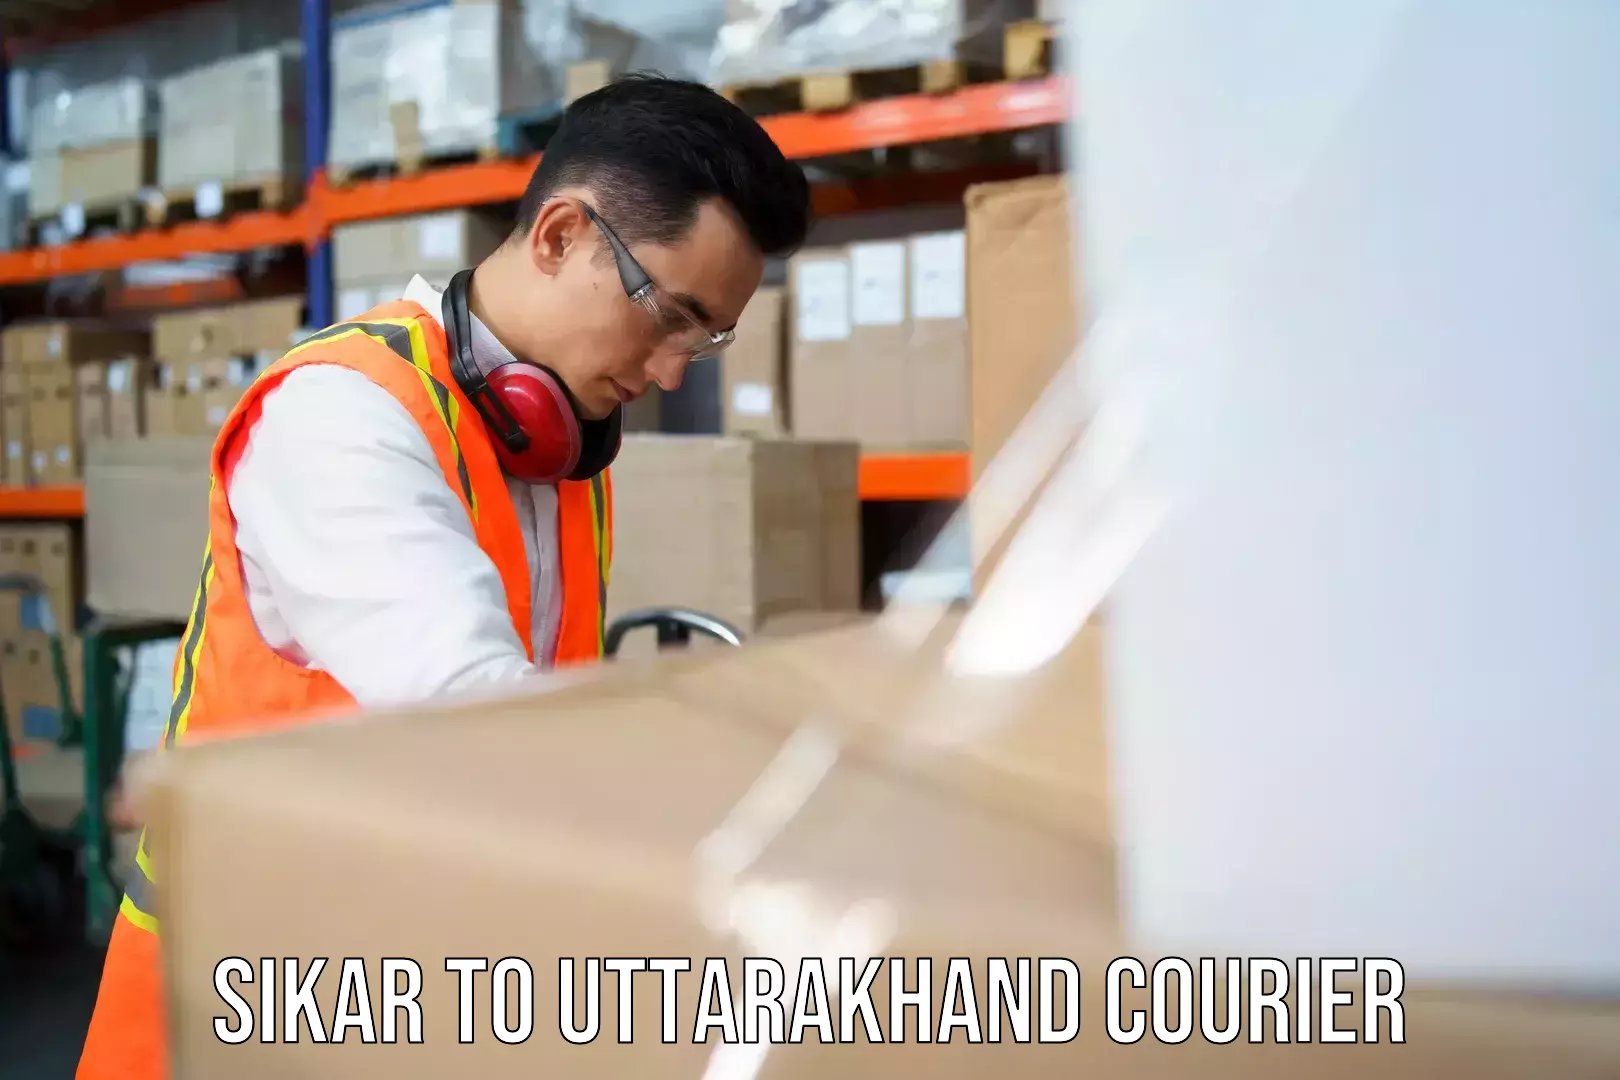 Versatile courier options Sikar to Uttarakhand